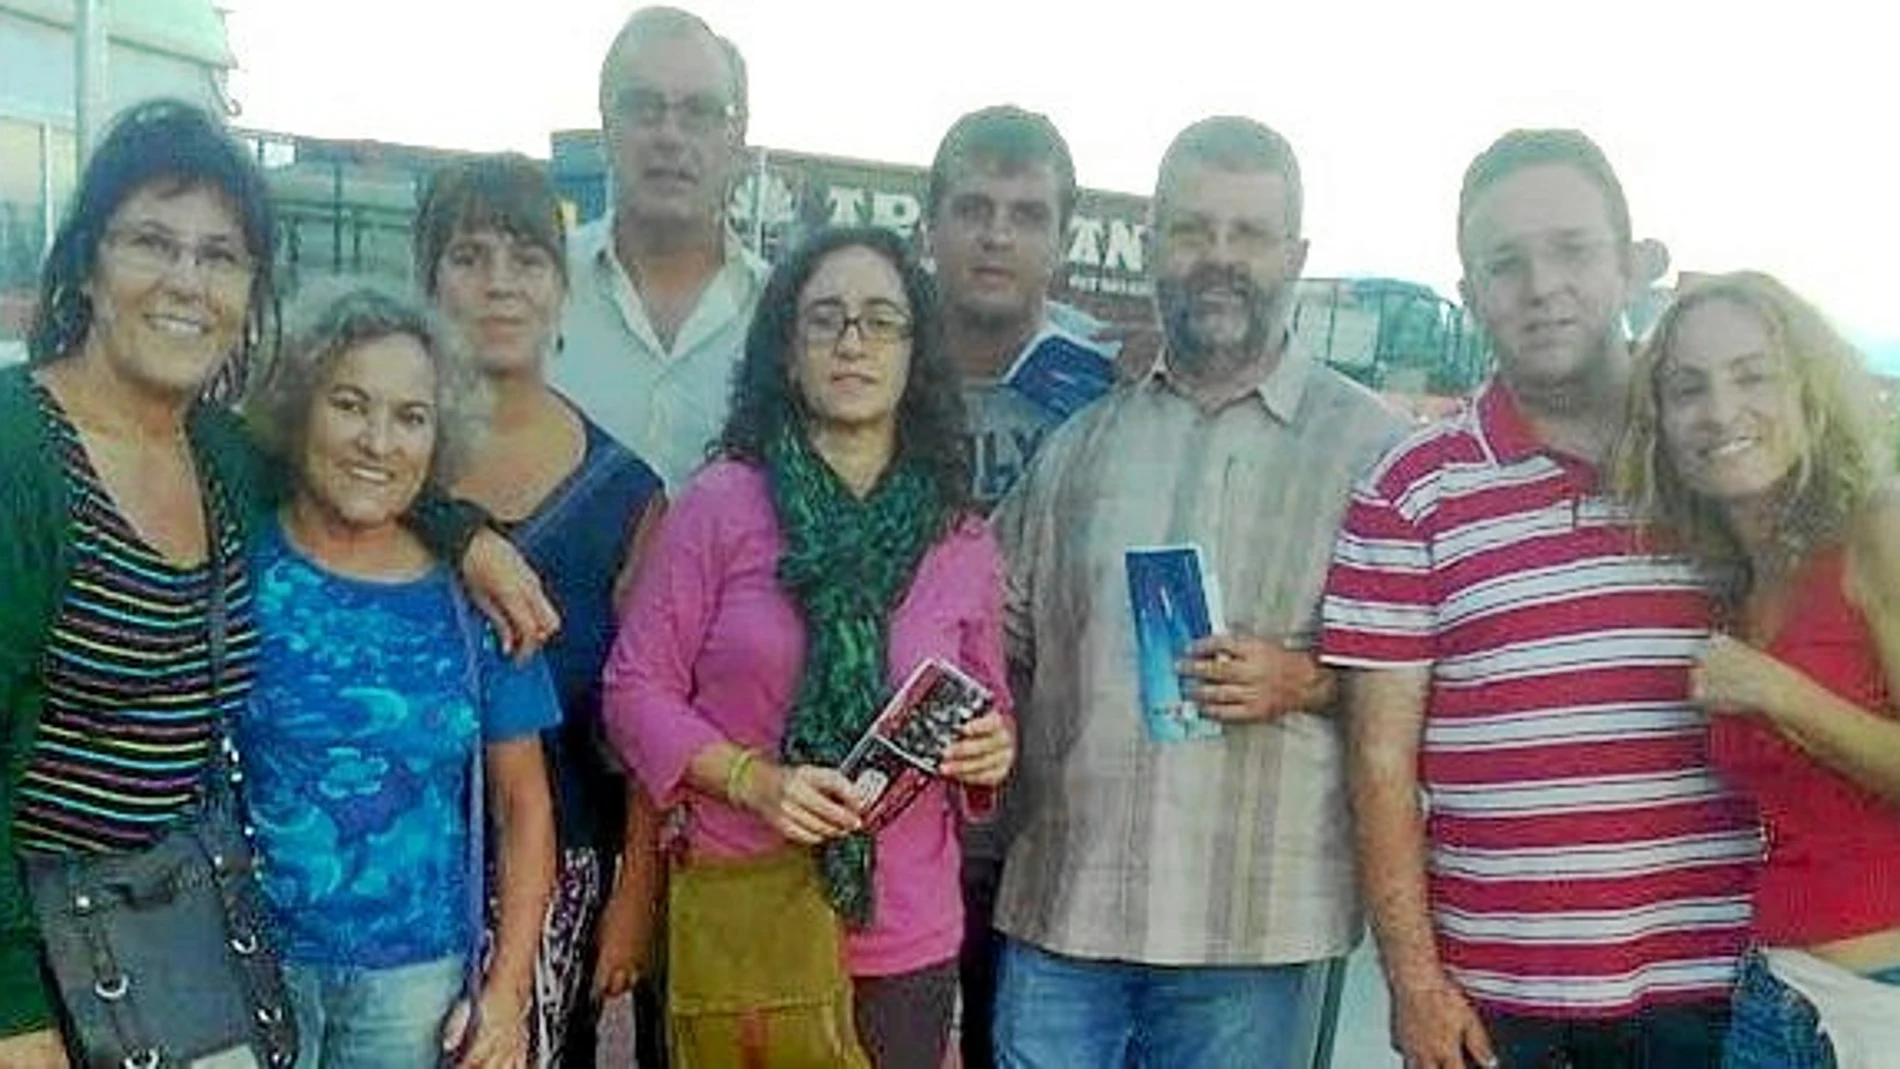 Los activistas canarios, antes de ser retenidos en El Aaiún